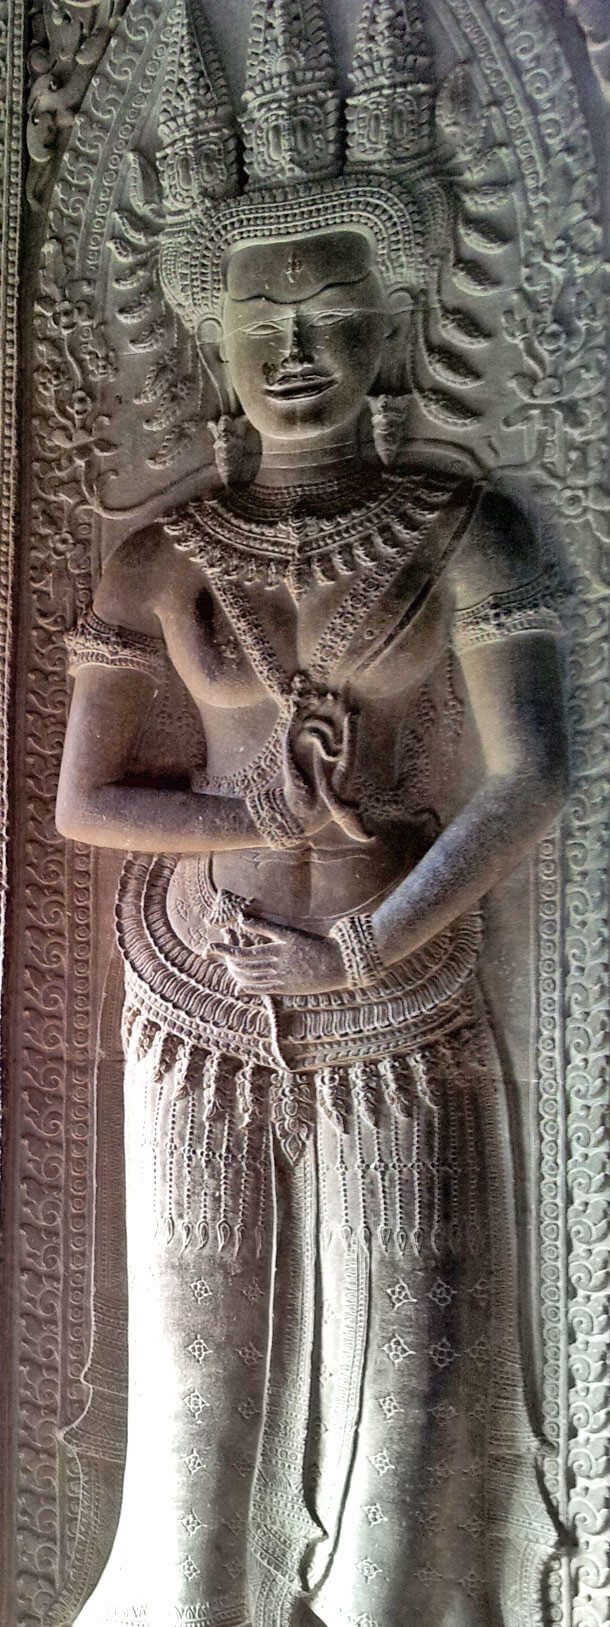 Devata at Angkor Wat